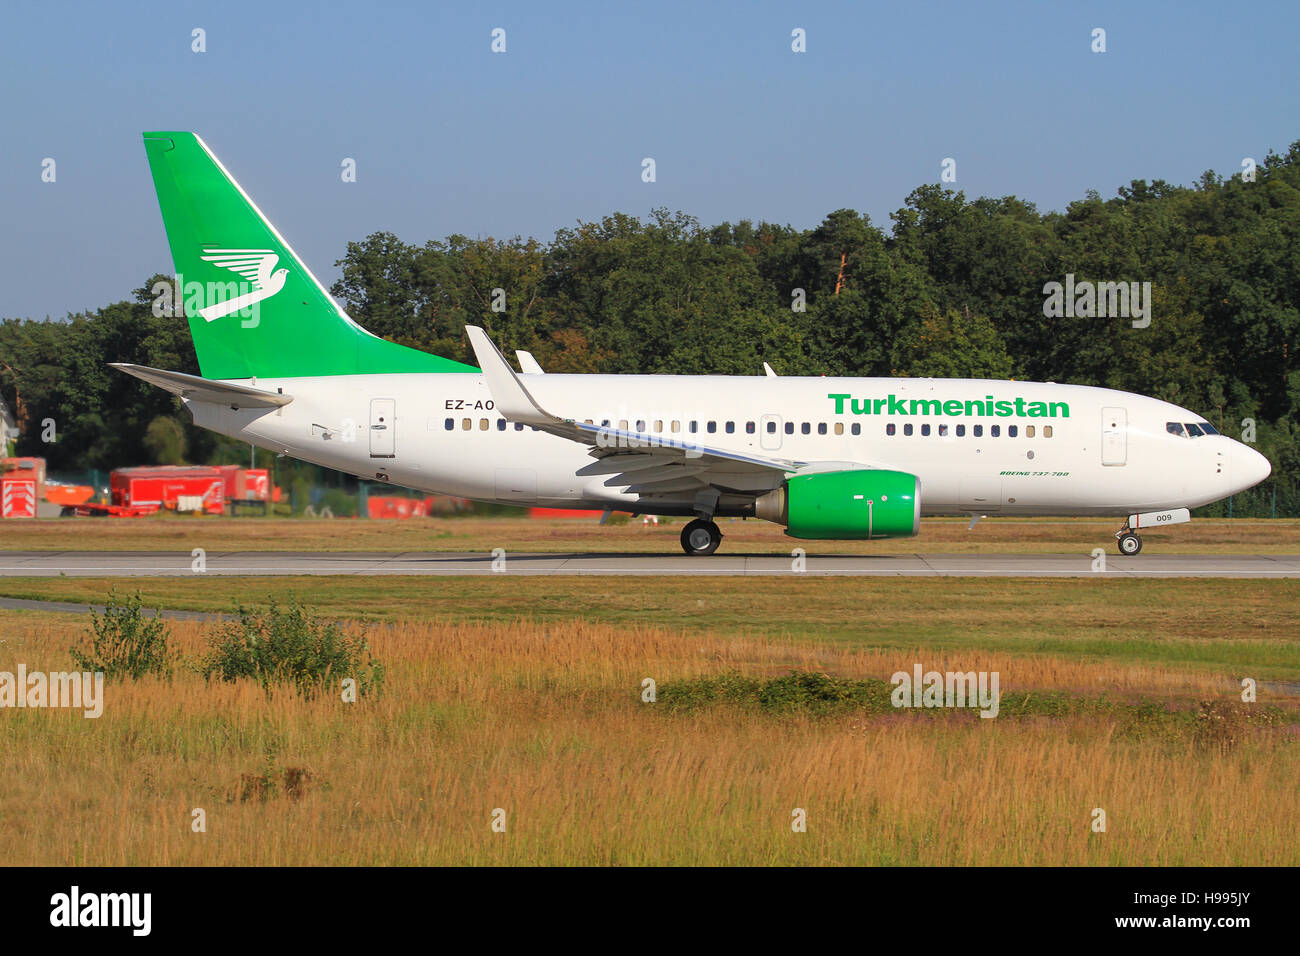 Frankfurt/Germany july 4, 2012: Turkmenistan Boeing 737 at Frankfurt Airport. Stock Photo